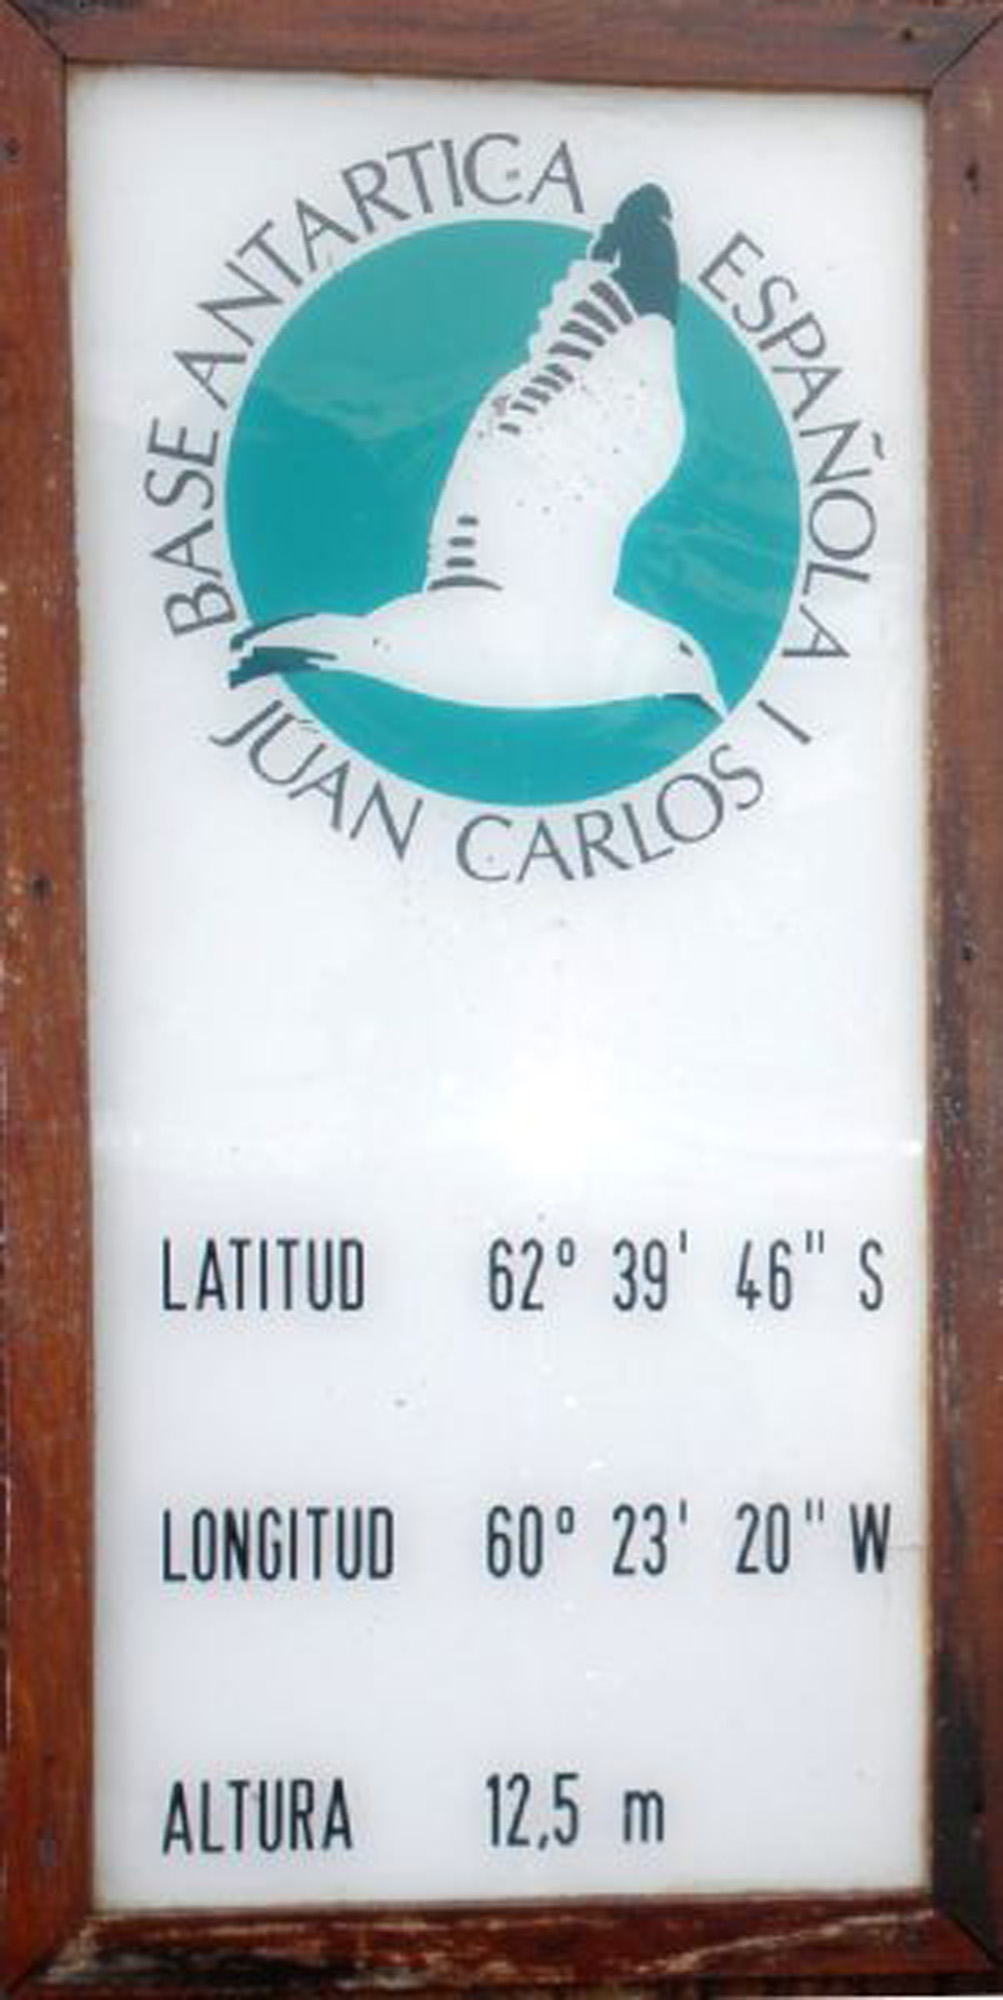 Antigua BAE Juan Carlos I (Placa).jpg